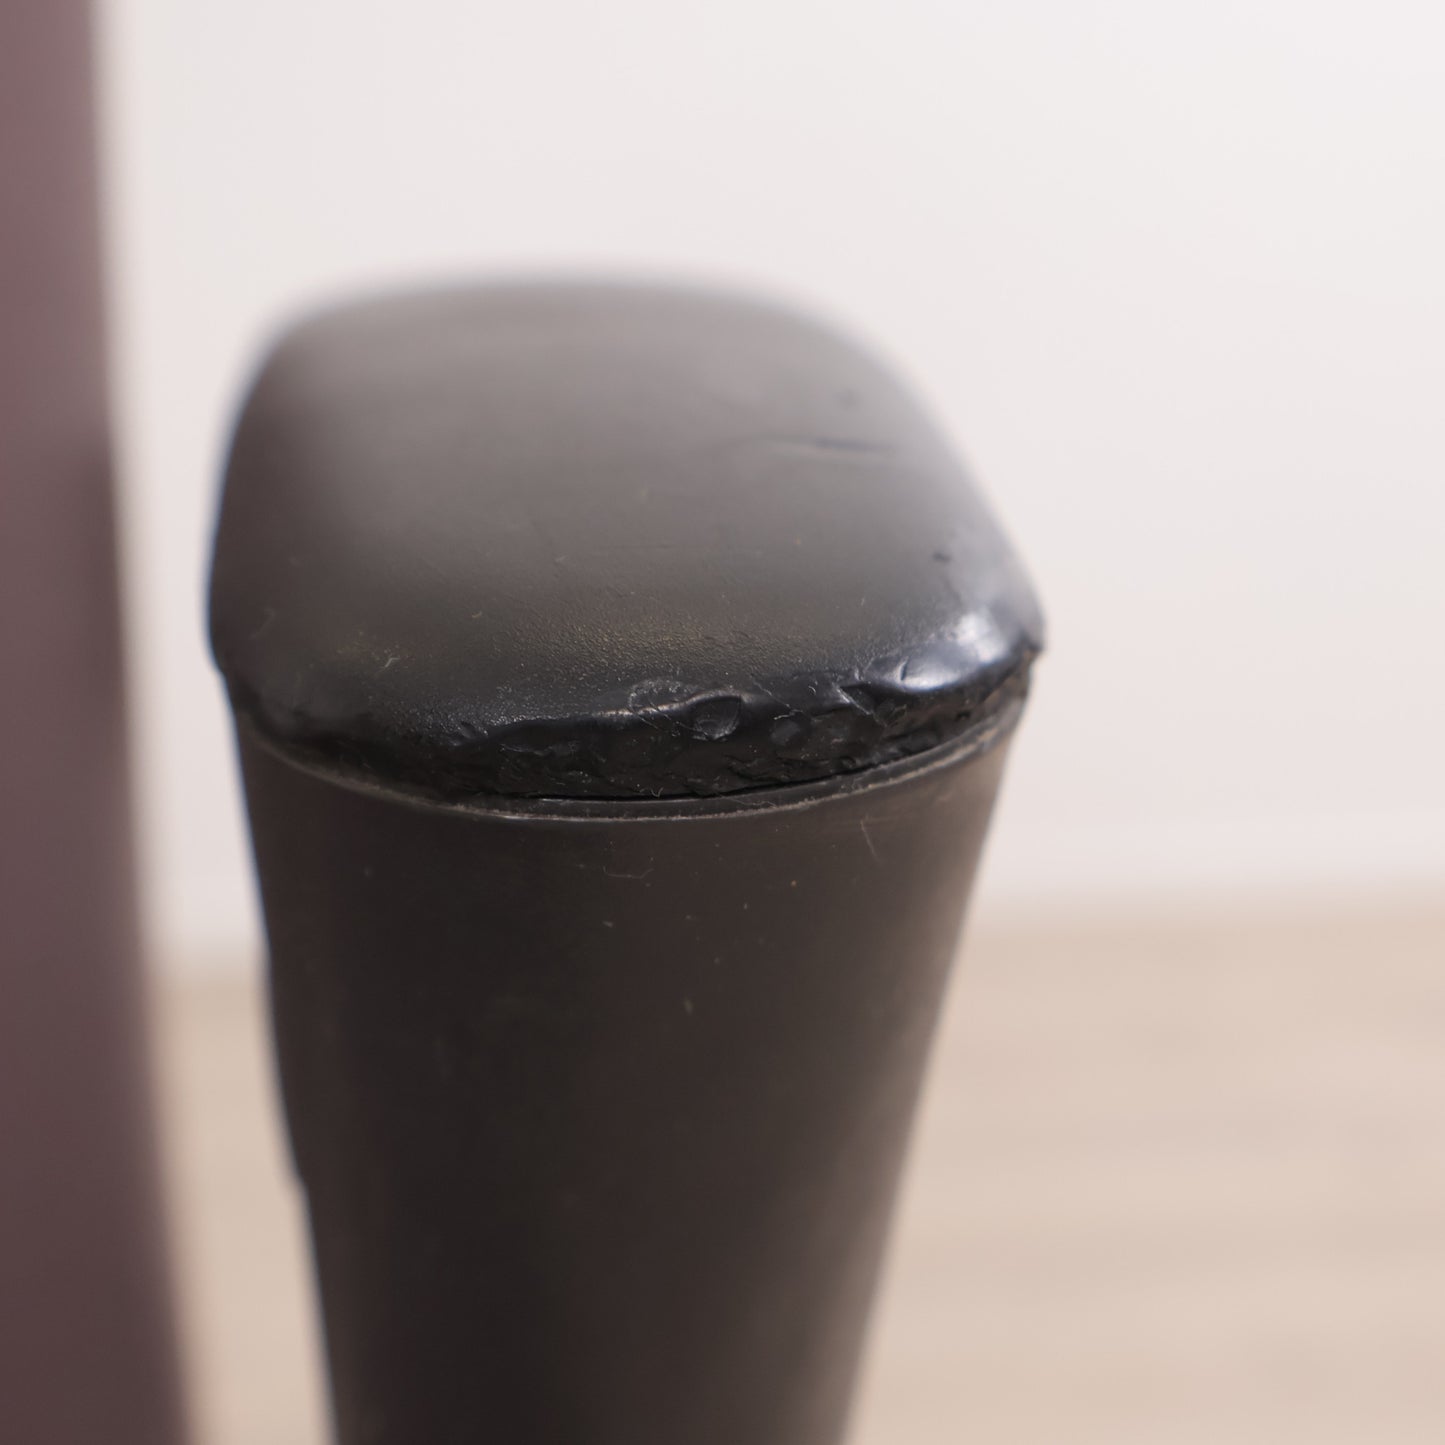 Nyrenset | Håg H04 (4400) Credo kontorstol, 70 cm sittehøyde